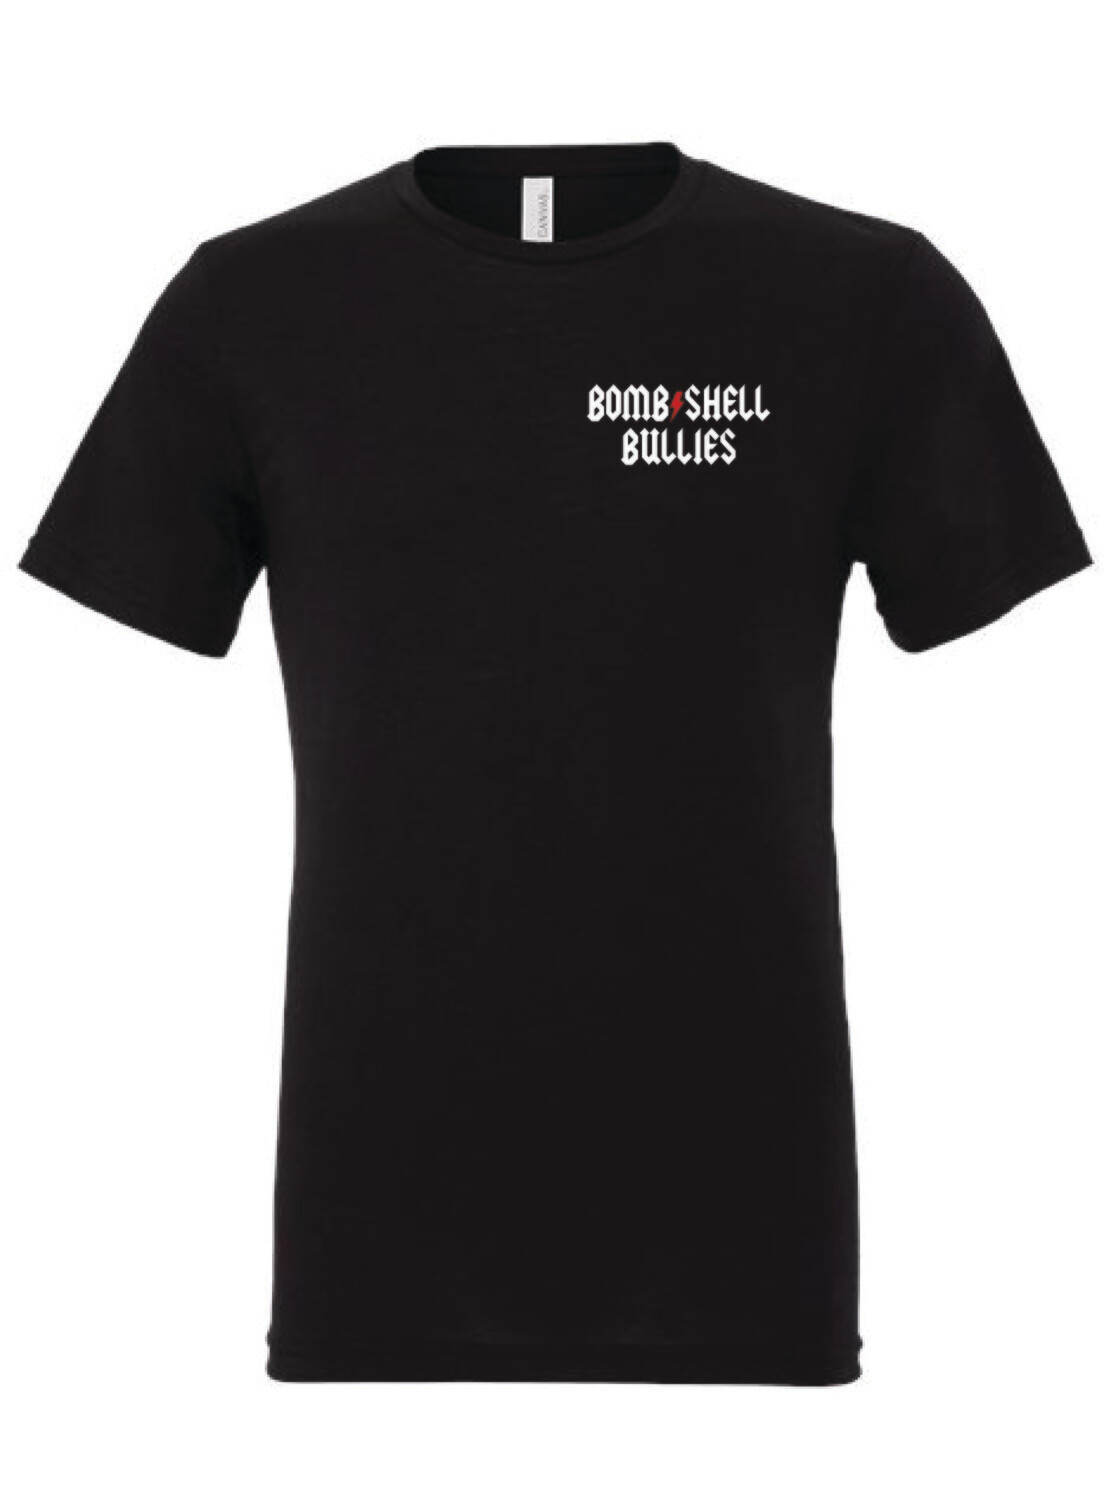 Bombshell 15th Anniversary T-Shirt - Black